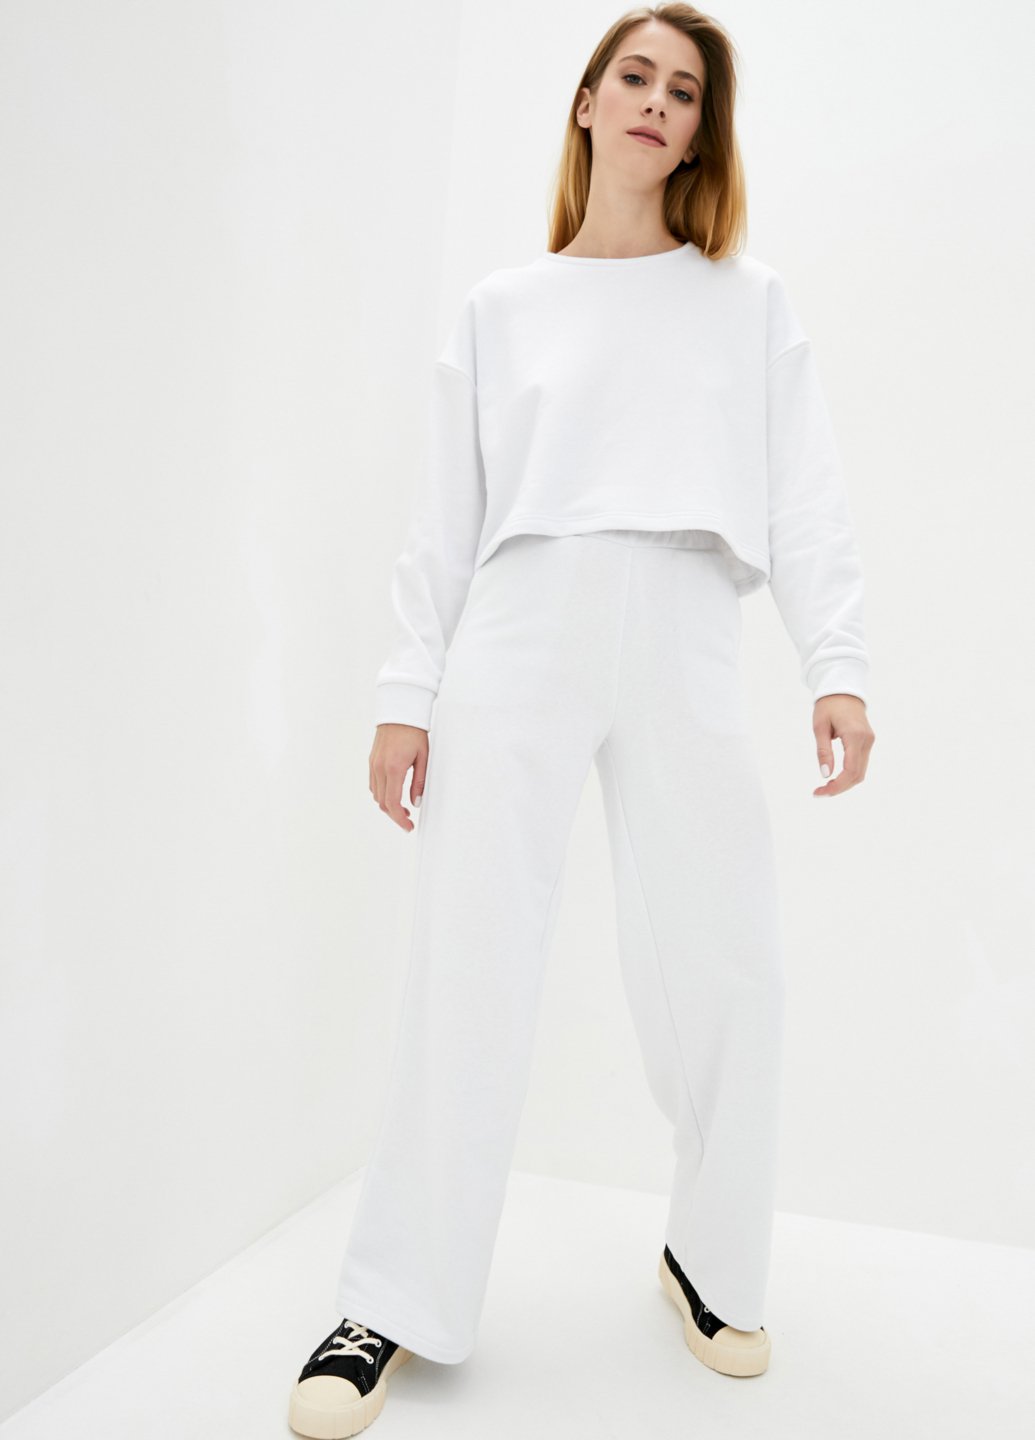 Купить Костюм женский белого цвета Merlini Фулхєм 100000069, размер 42-44 в интернет-магазине